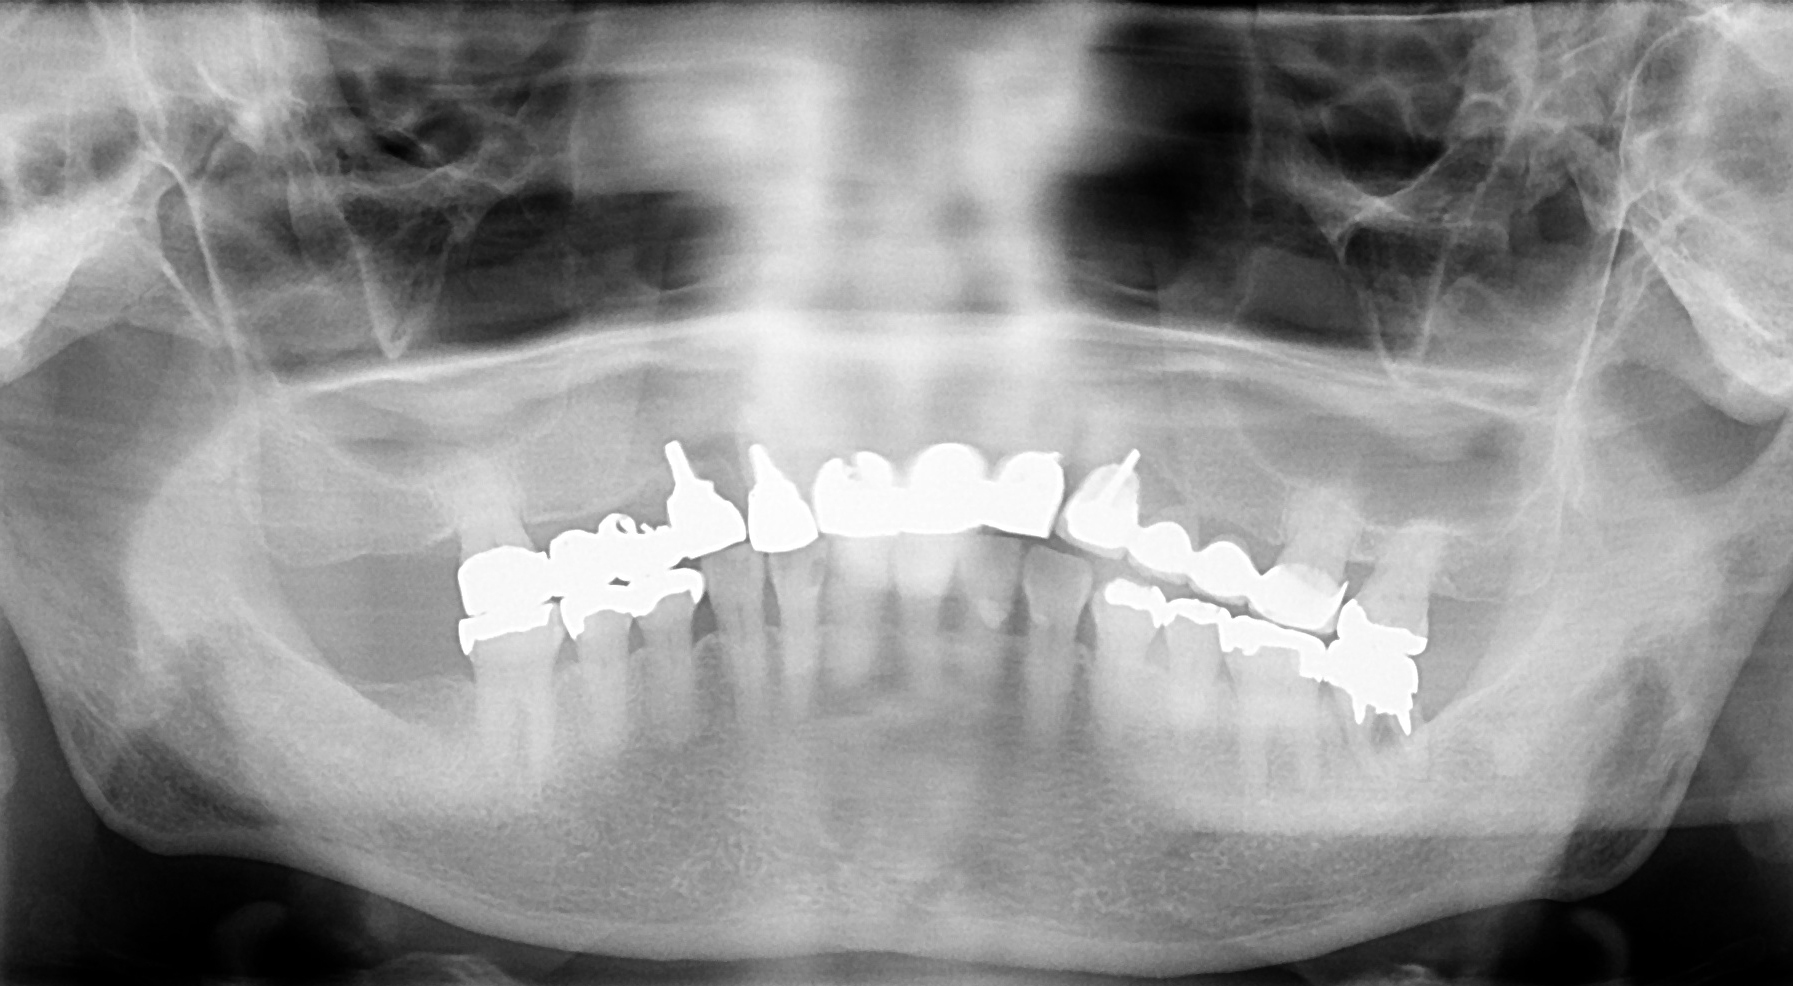 旭川でインプラント治療はエルム駅前歯科クリスタル｜治療からメンテナンスまでインプラントを末長くお使いいただくために世界品質のノーベルバイオケア、ストローマンのインプラントを提供しています。安価なインプラントでメンテナンスに苦しまないようにインプラントのことなら、旭川のエルム駅前歯科クリスタルにお気軽にご相談ください｜毎月インプラント無料相談会を実施して１０年、多くの皆様に正しいインプラントの理解を啓蒙しています